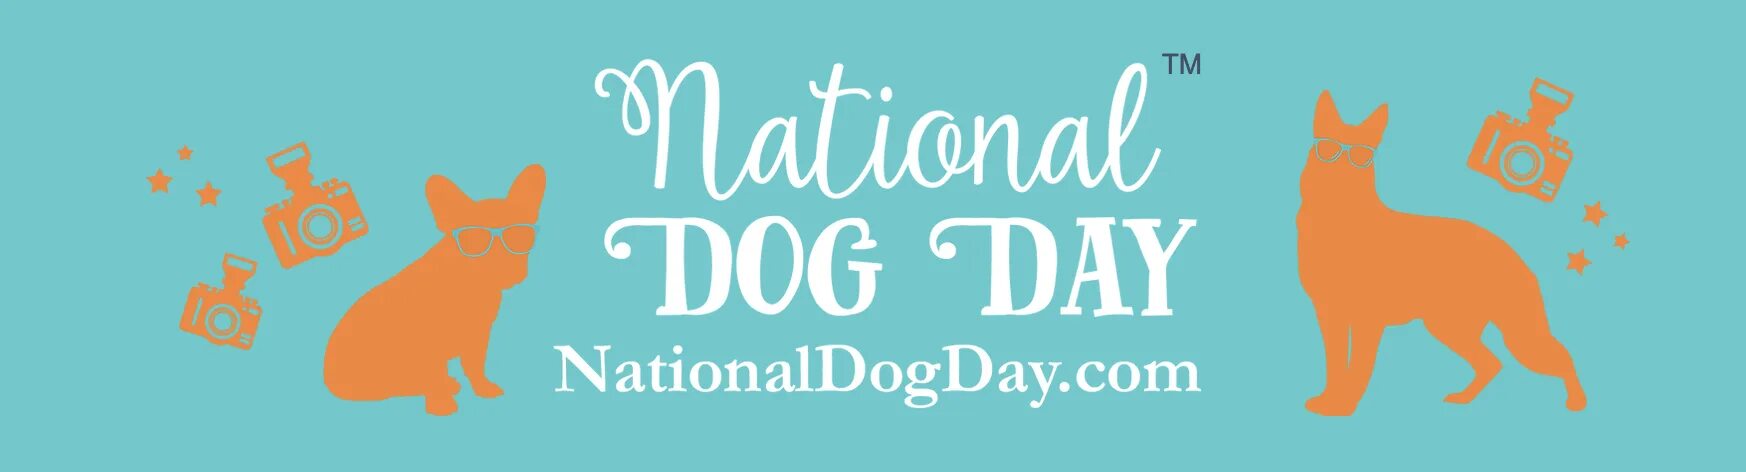 Переведи на русский dog day. День собак (National Dog Day) - США. Дог дей дог дей. Dog Day картинки. Dog Day блоггер.